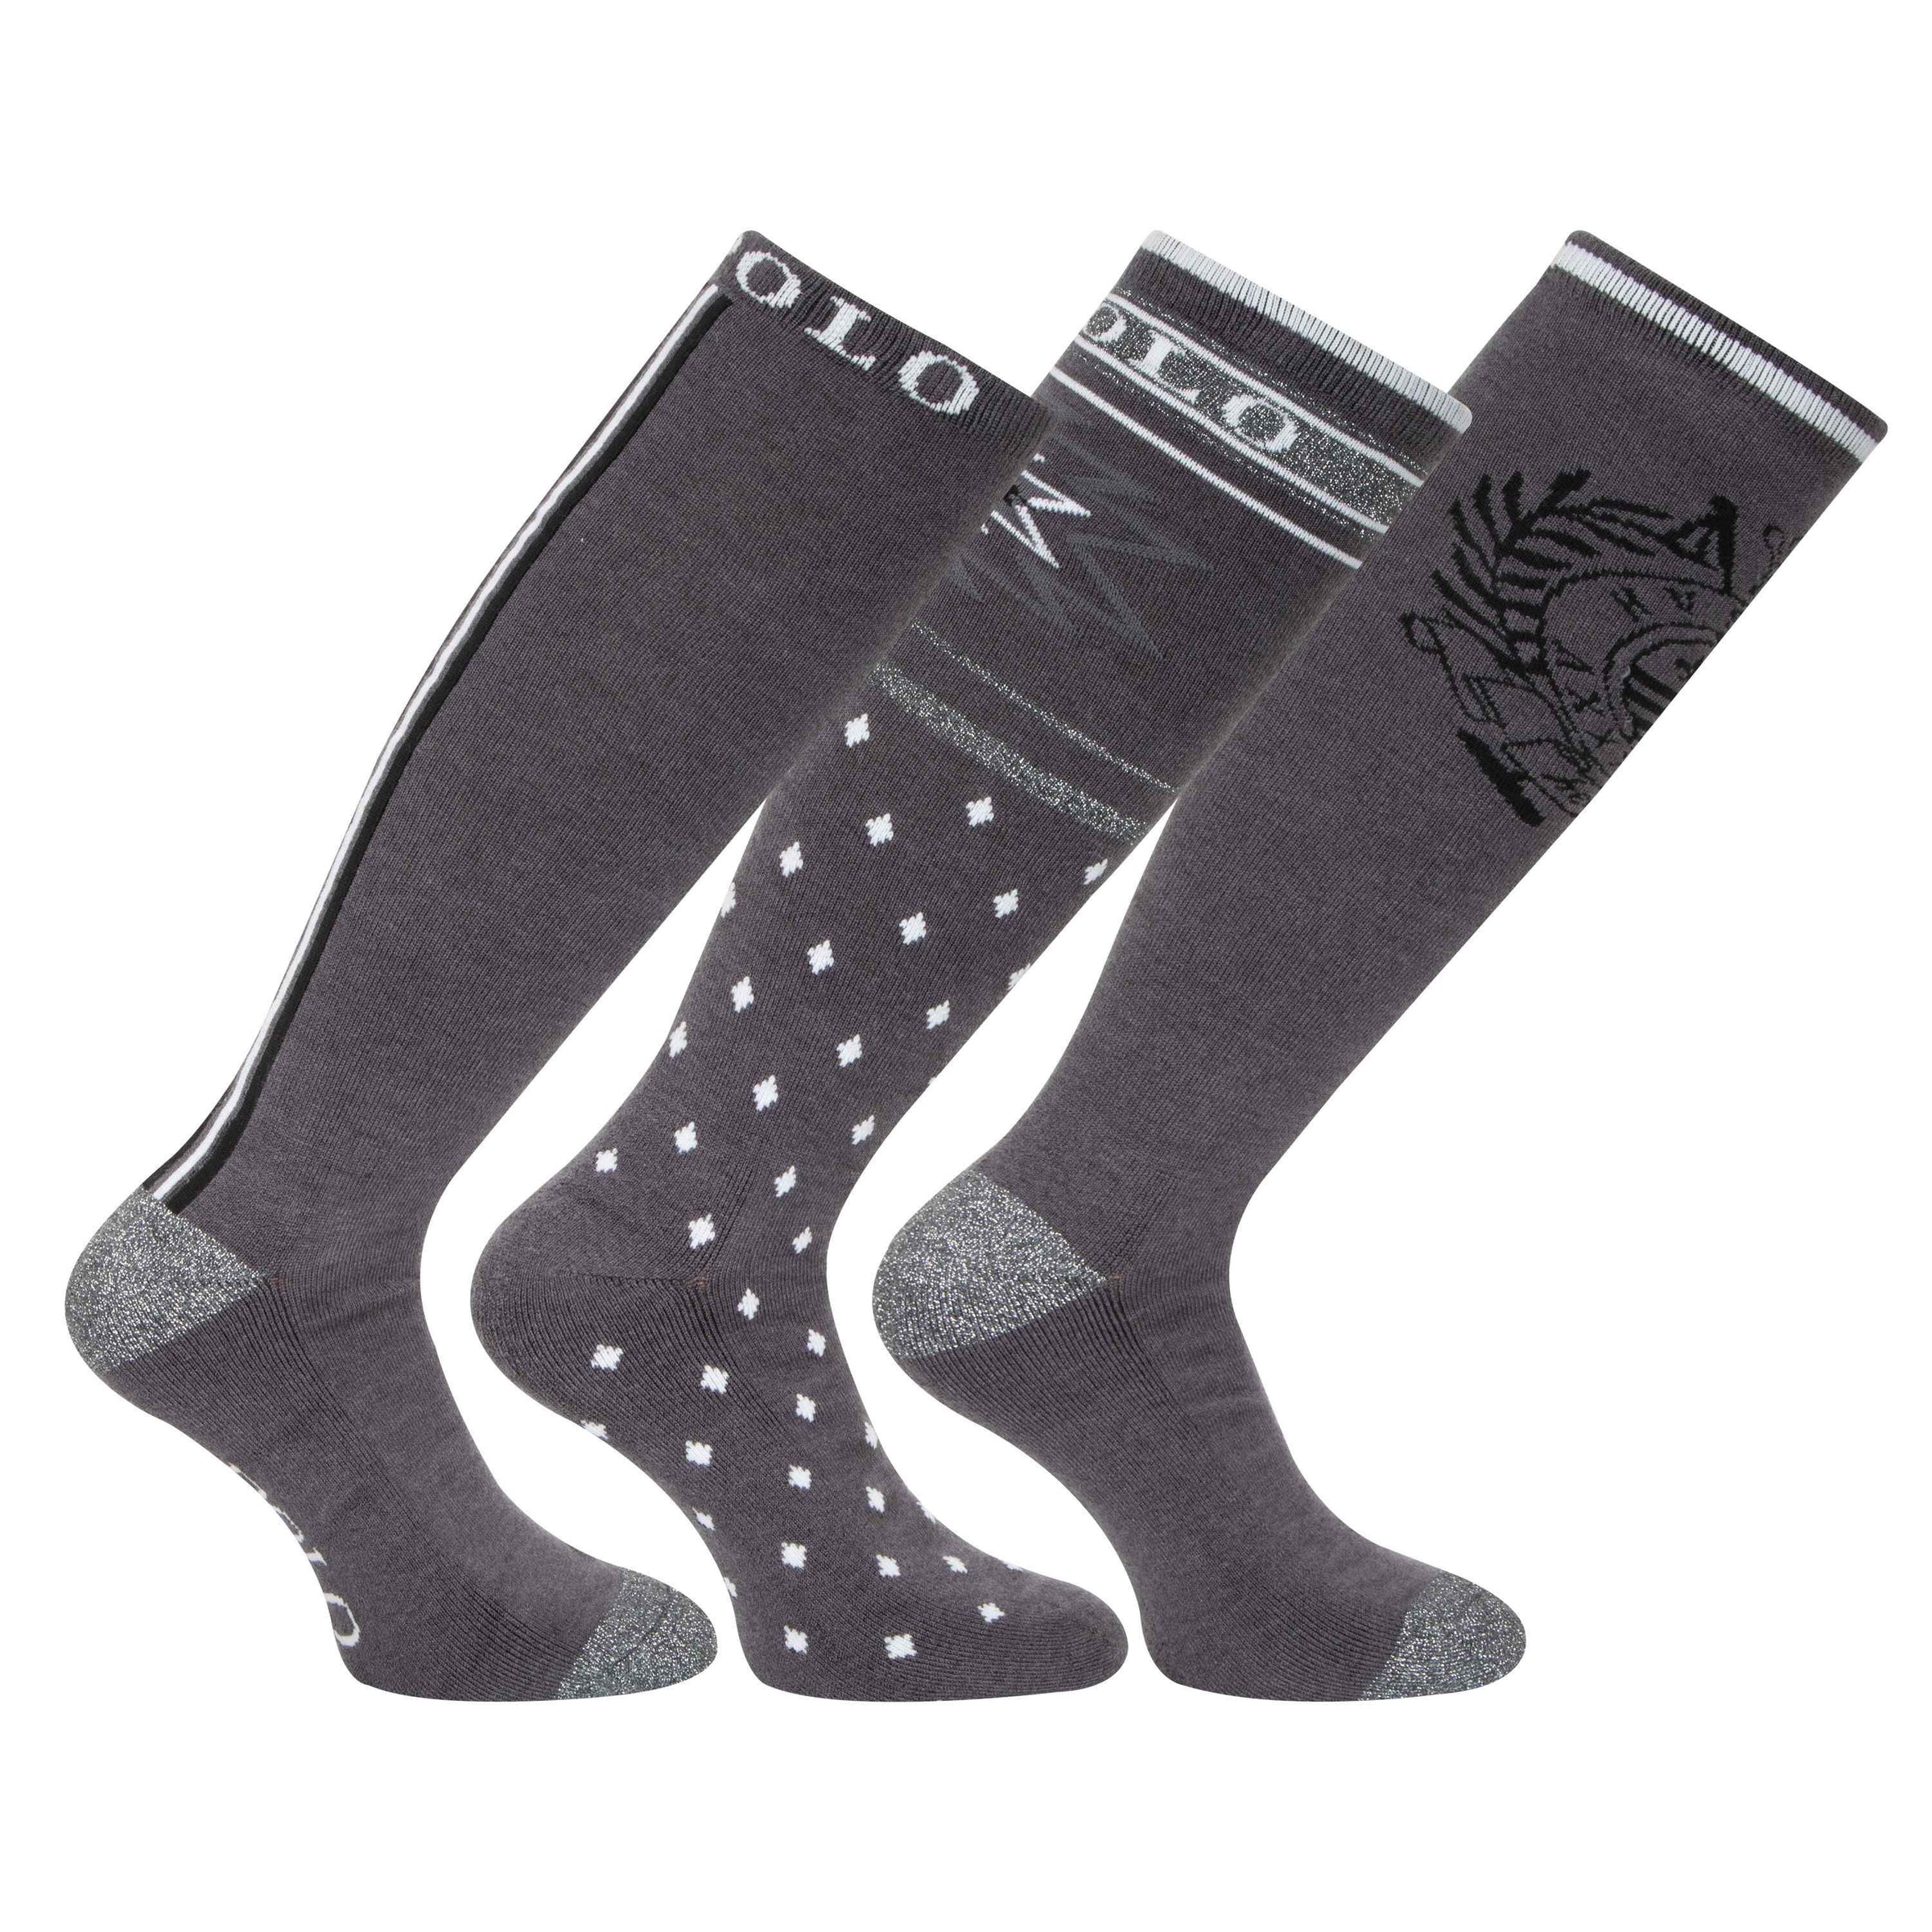 HV Polo grey glitter multipack socks- pack of 3 pairs